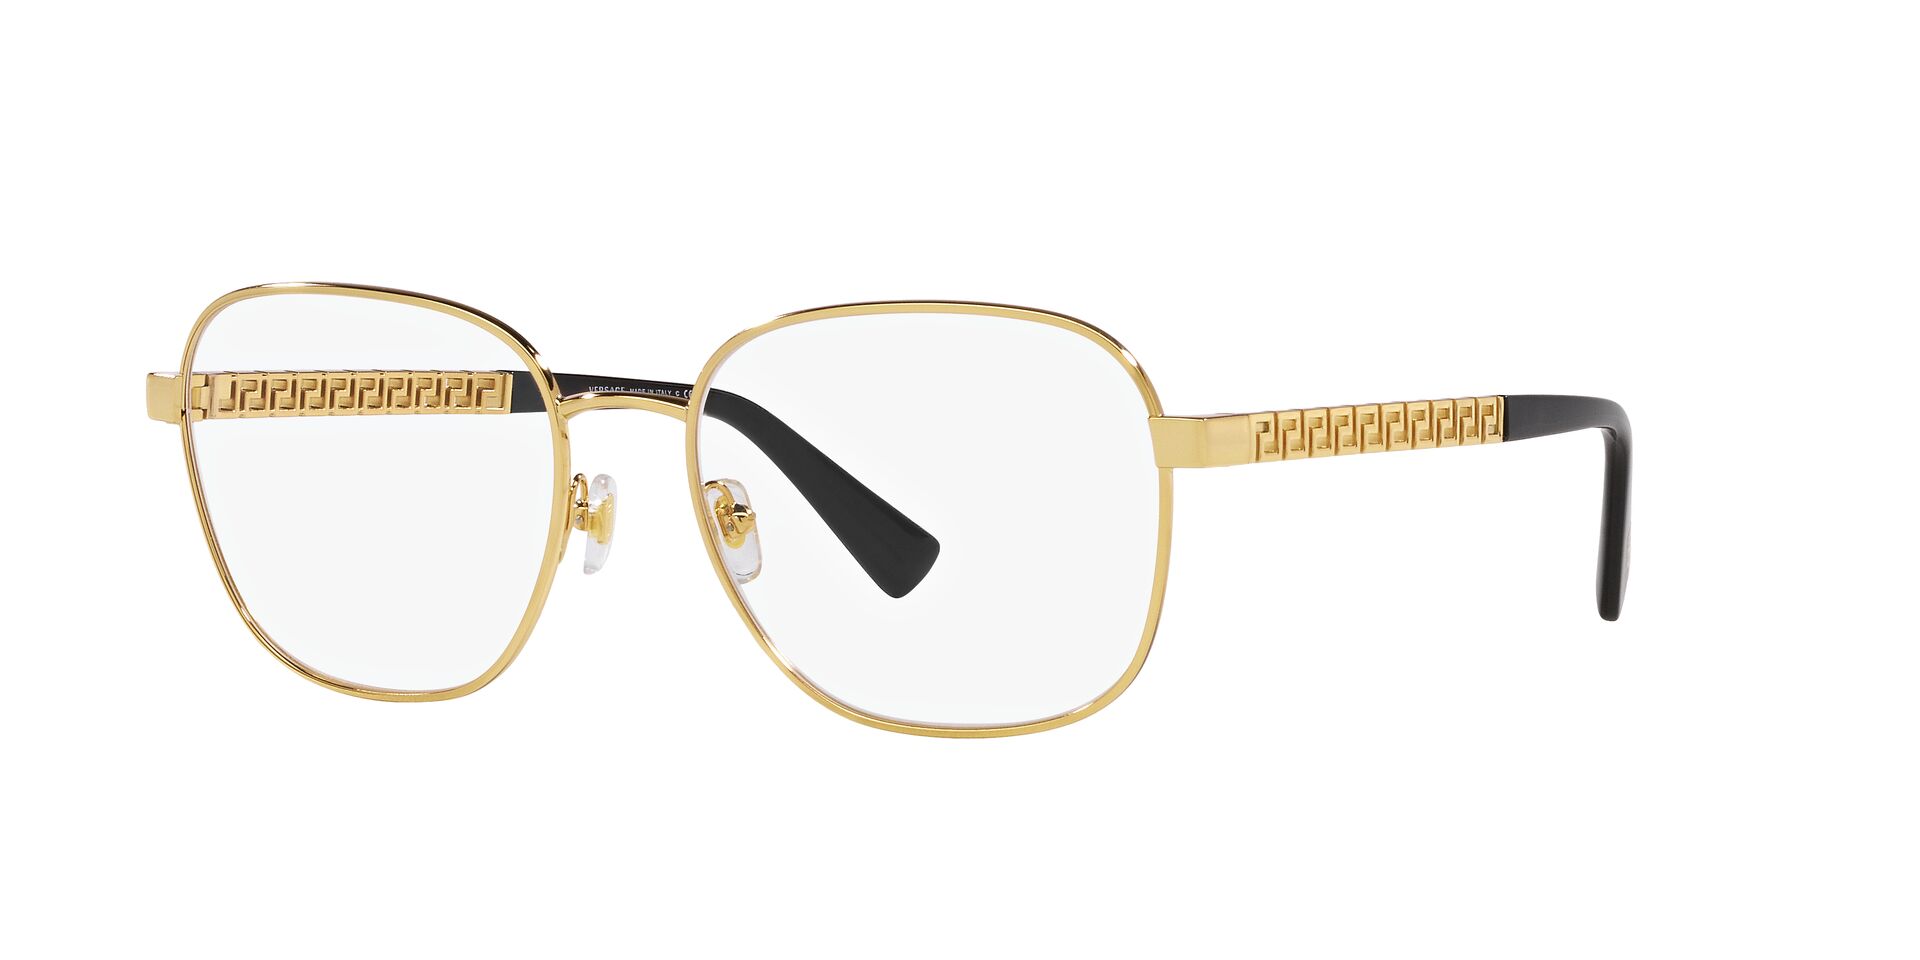 Versace VE1290 Glasses - Gold - Tortoise+Black